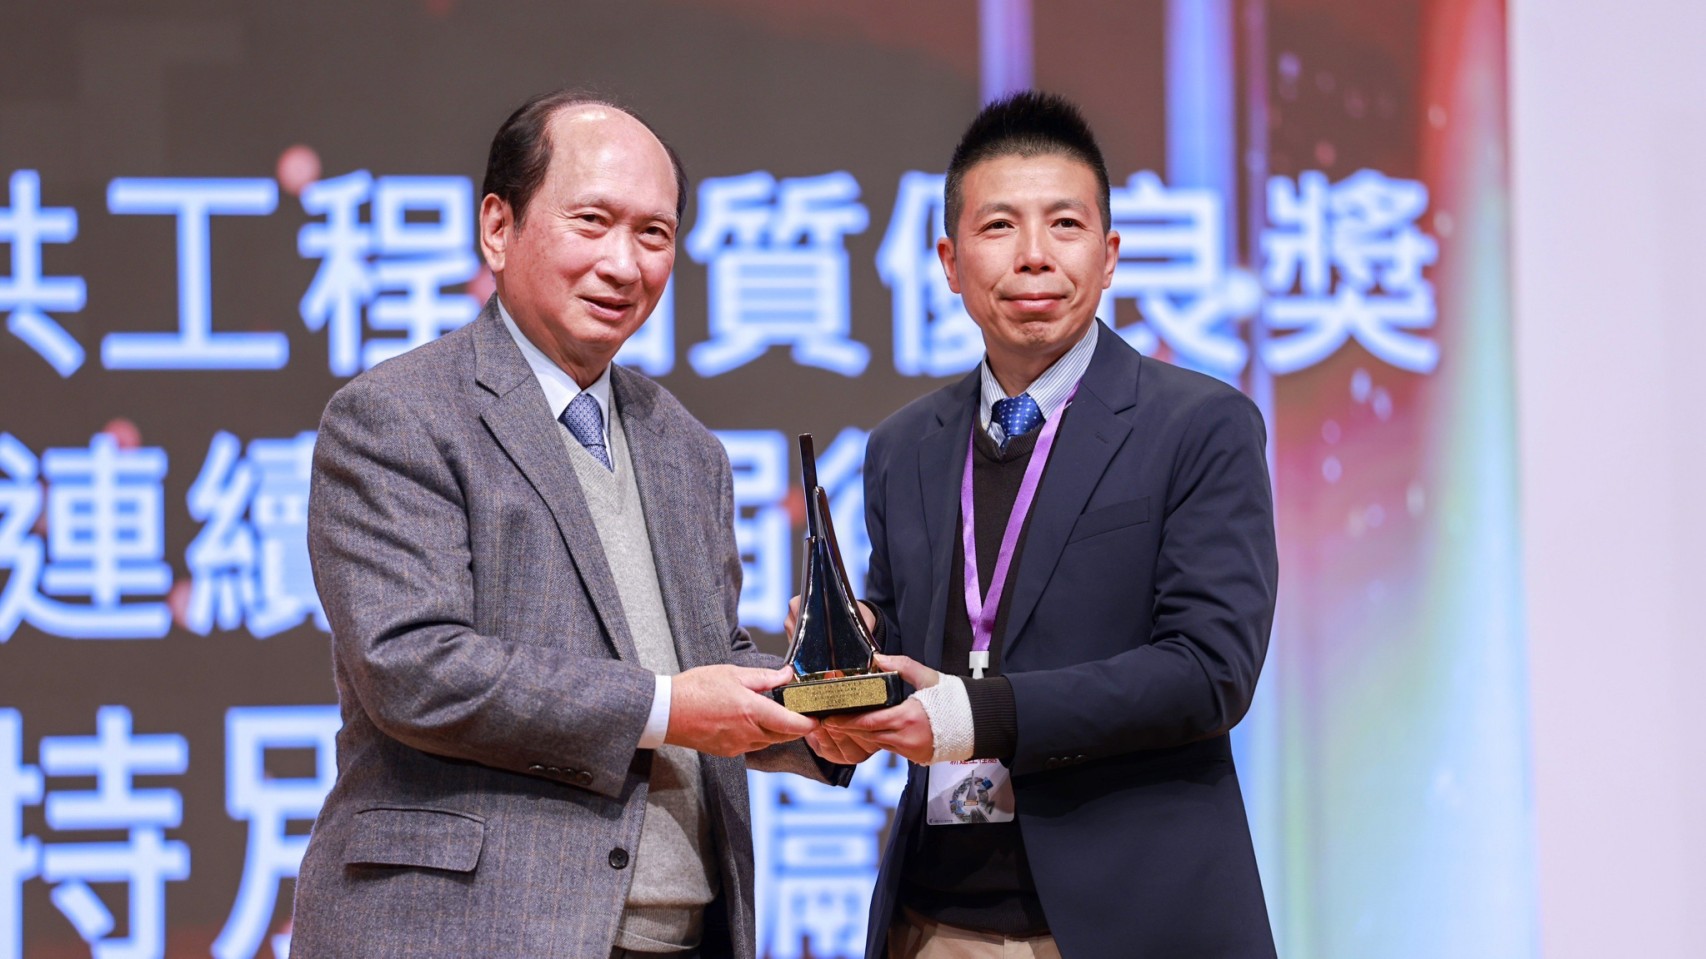 新工處榮獲「公共工程品質優良獎連續10屆得獎之特別貢獻獎」，由新工處魏竹威副總(左)代表受獎。